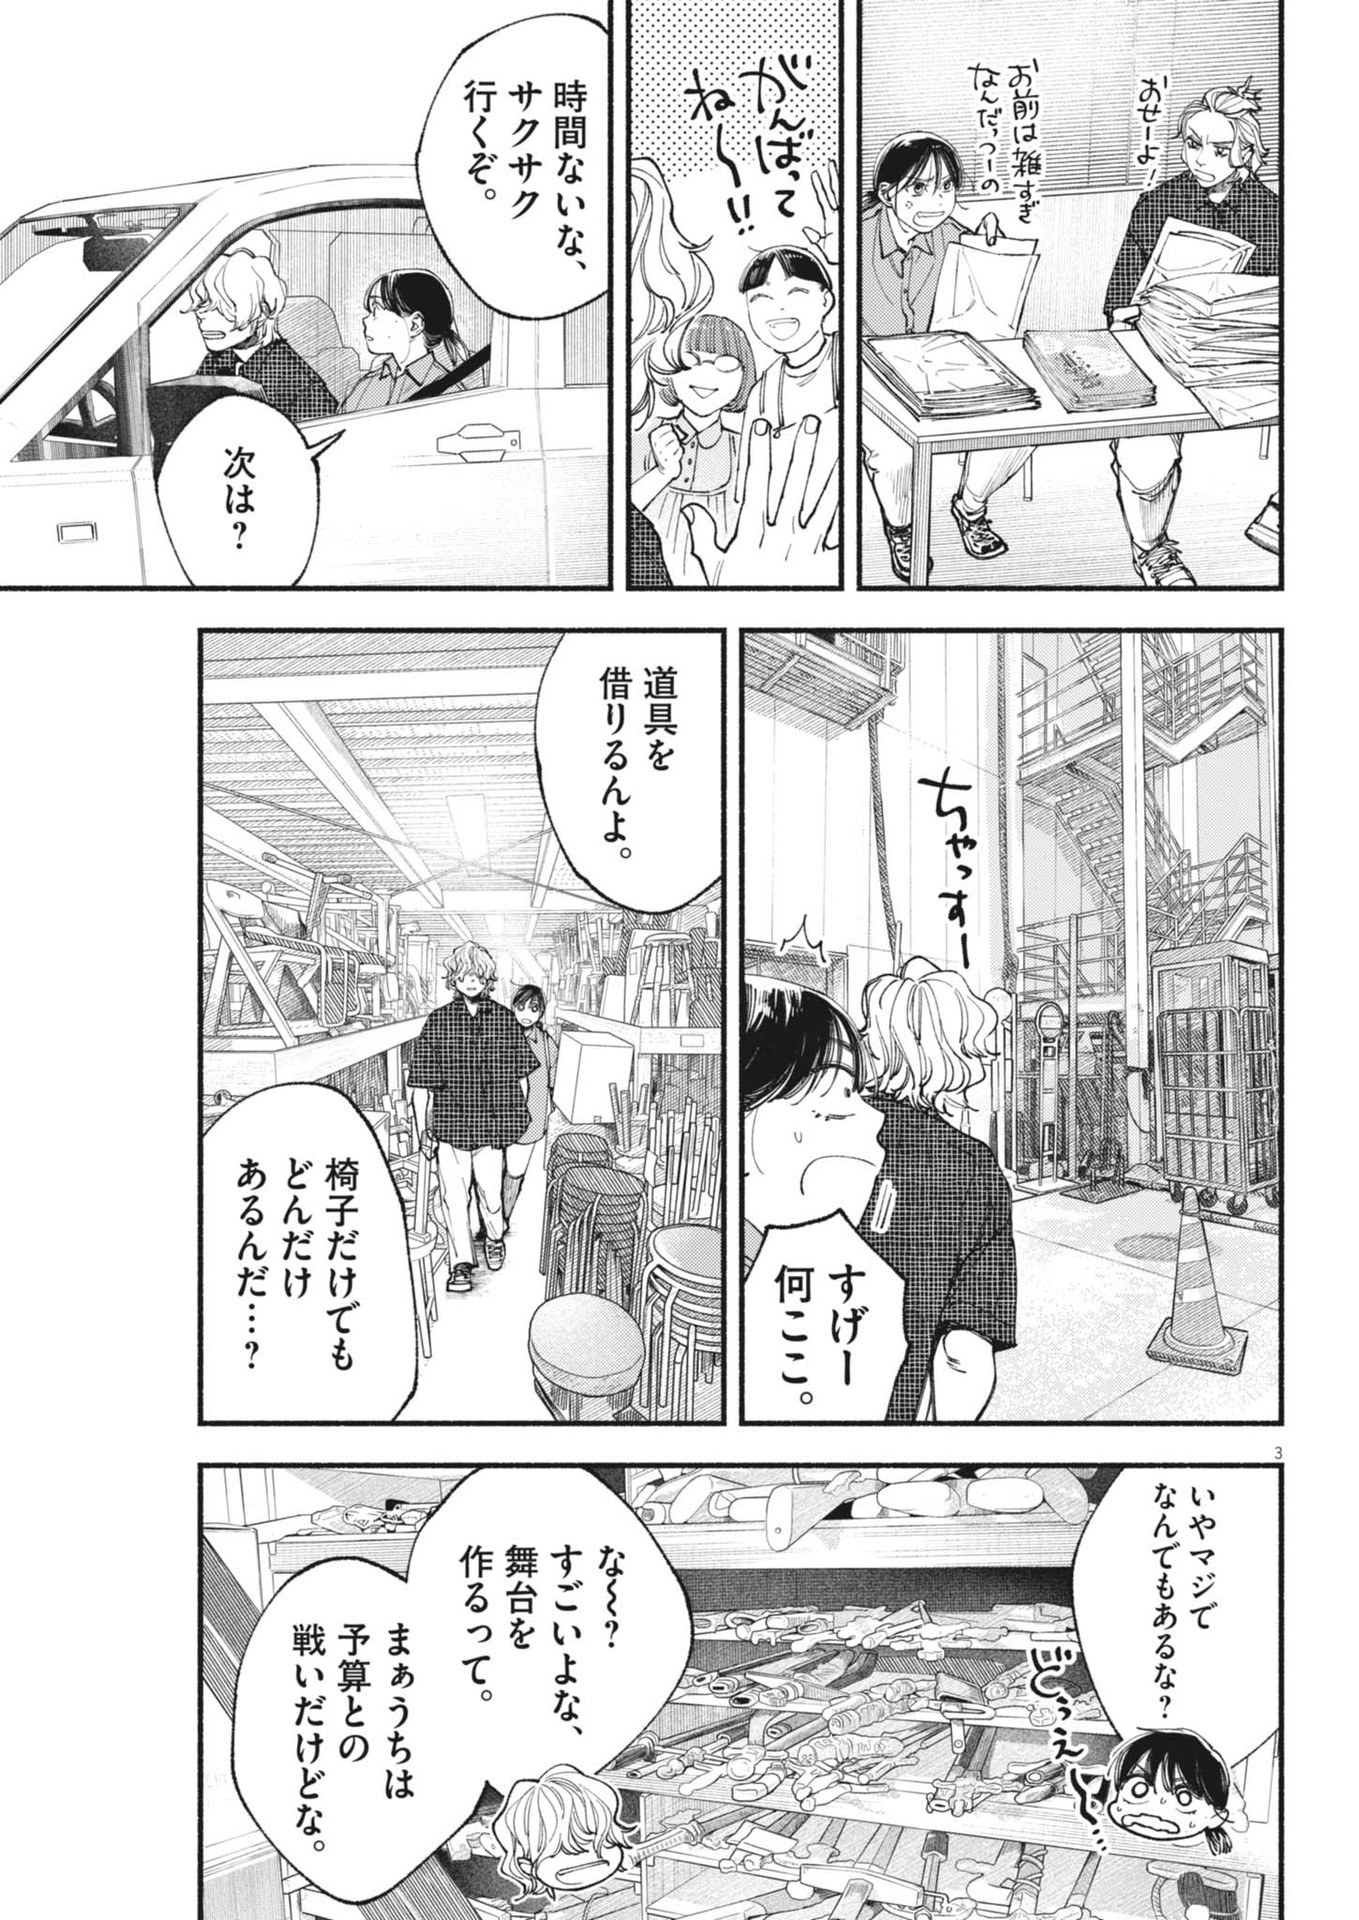 Konoyo wa Tatakau Kachi ga Aru  - Chapter 28 - Page 3